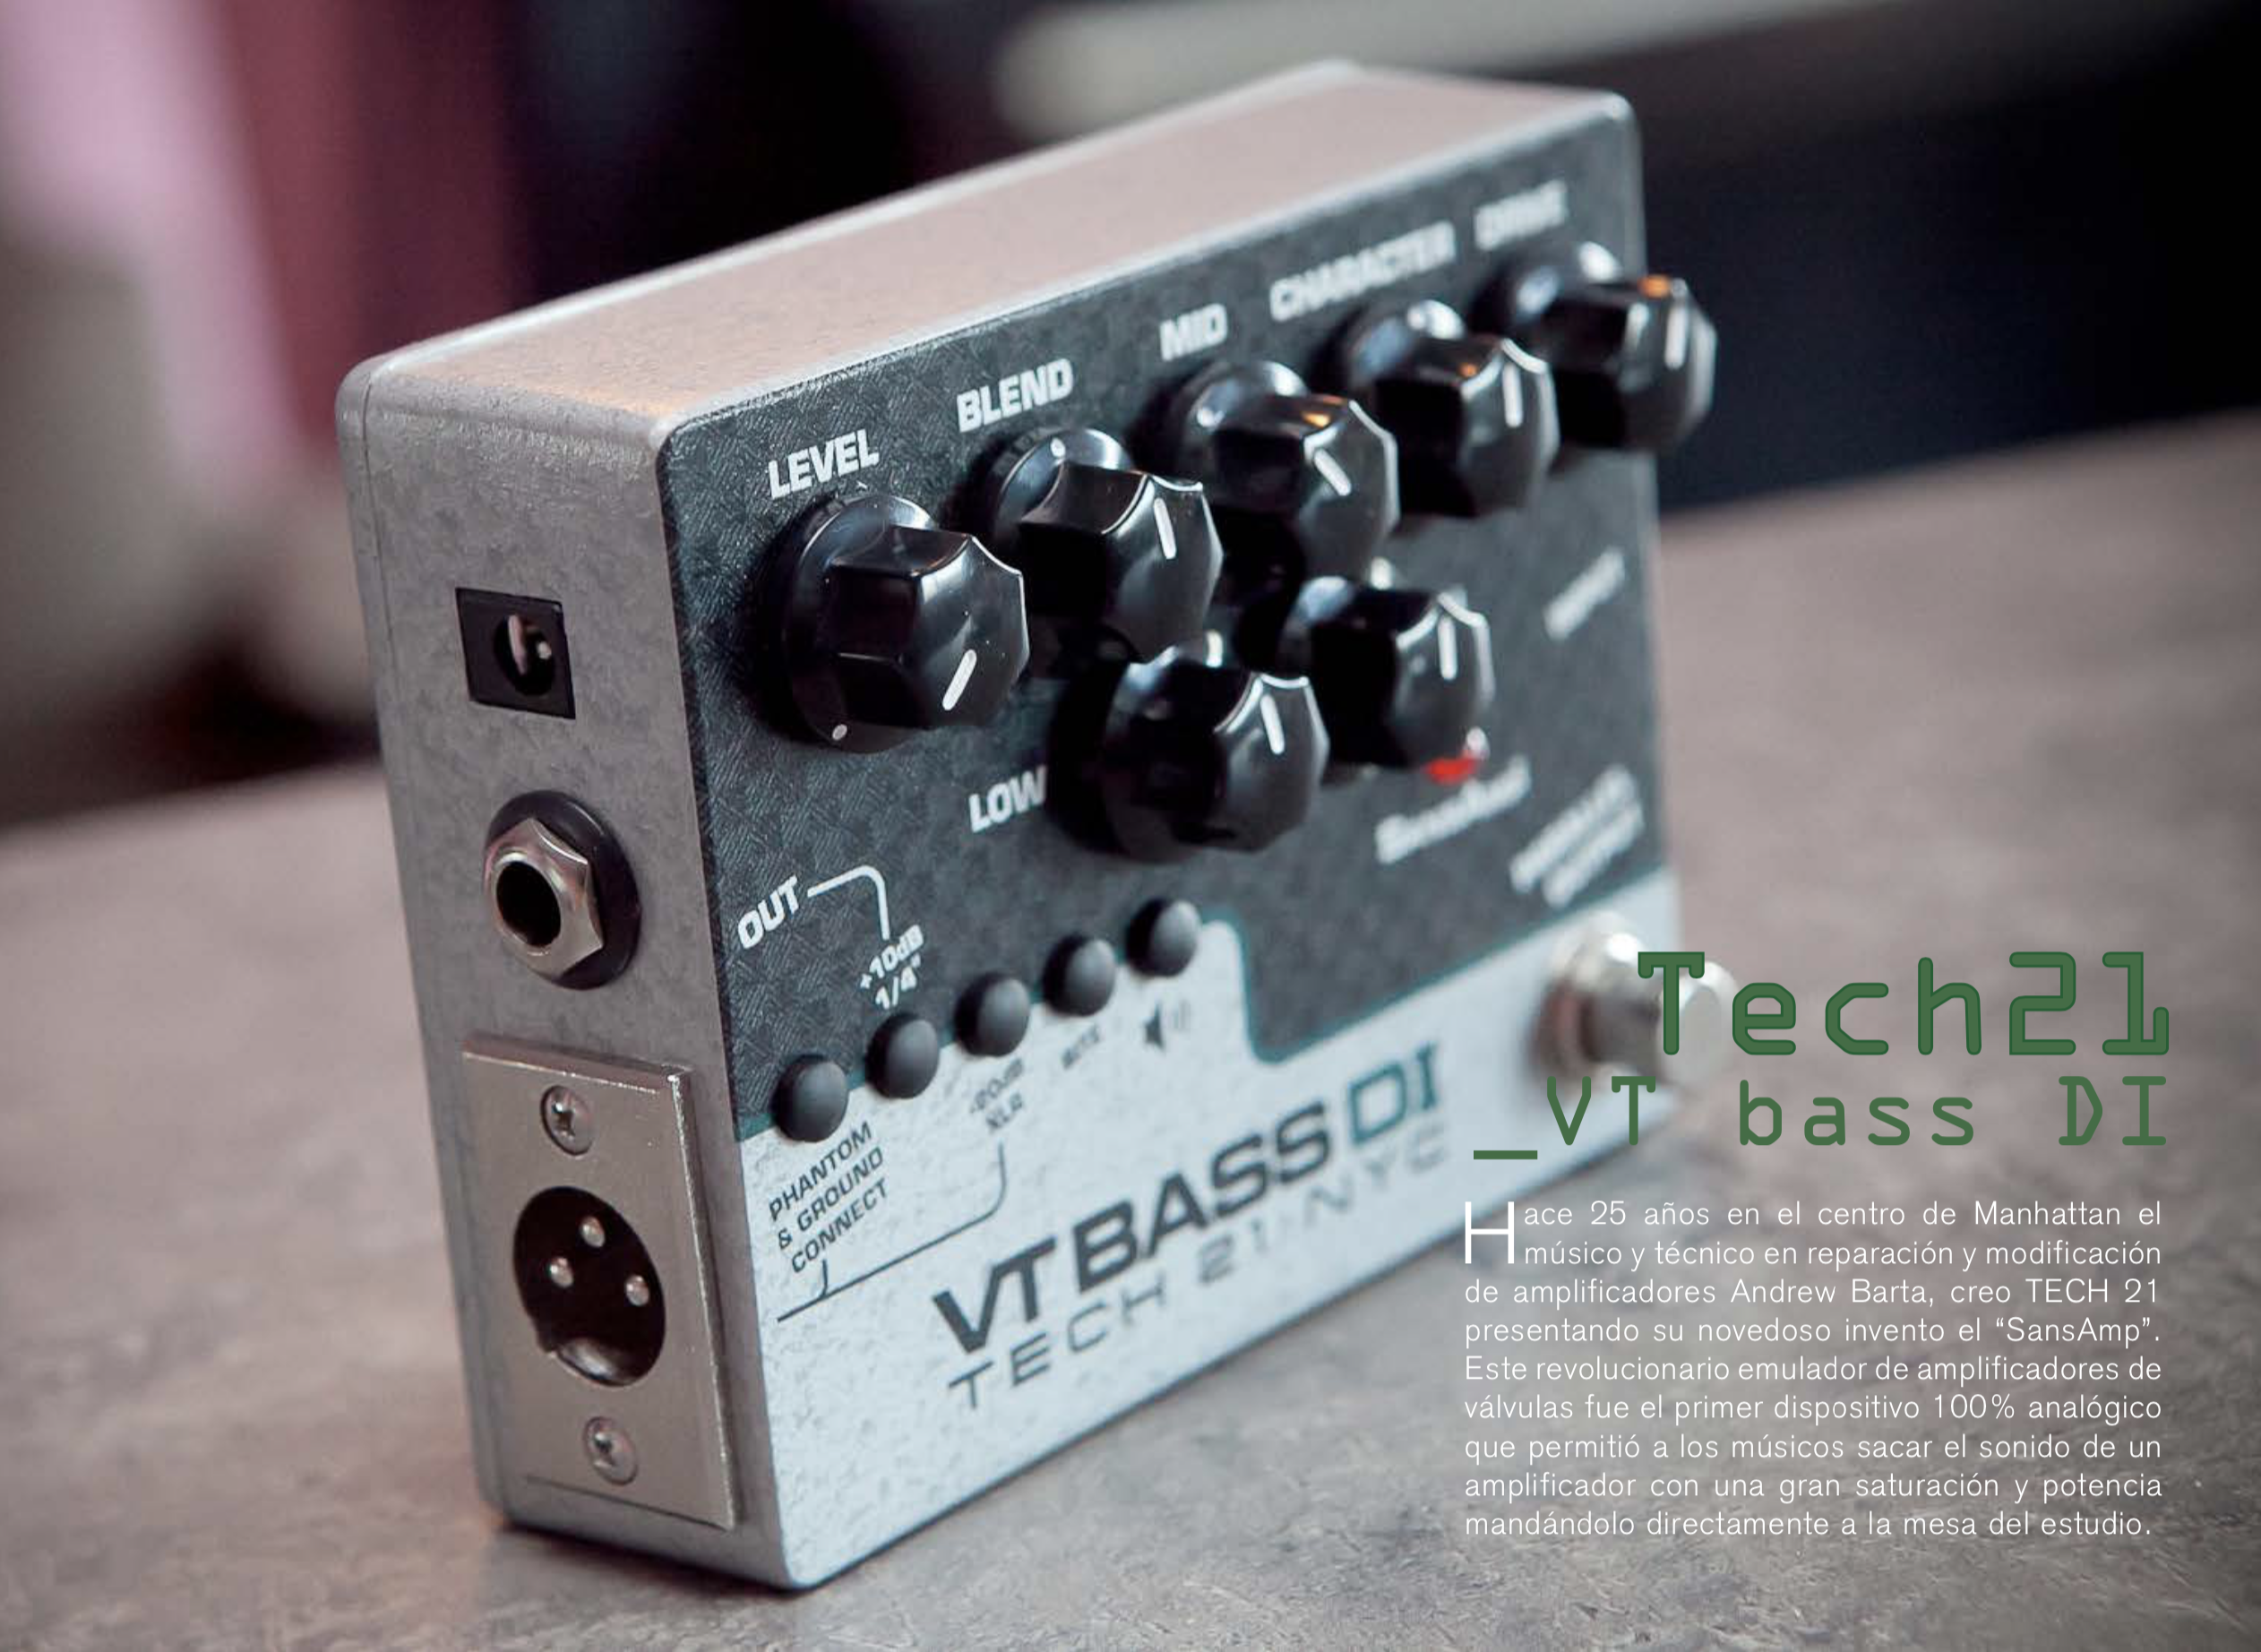 Басс 21. Tech Bass. VT Bass. Tech 21 SANSAMP VT Bass di купить. Tech 21 VT Bass v2 отзывы.